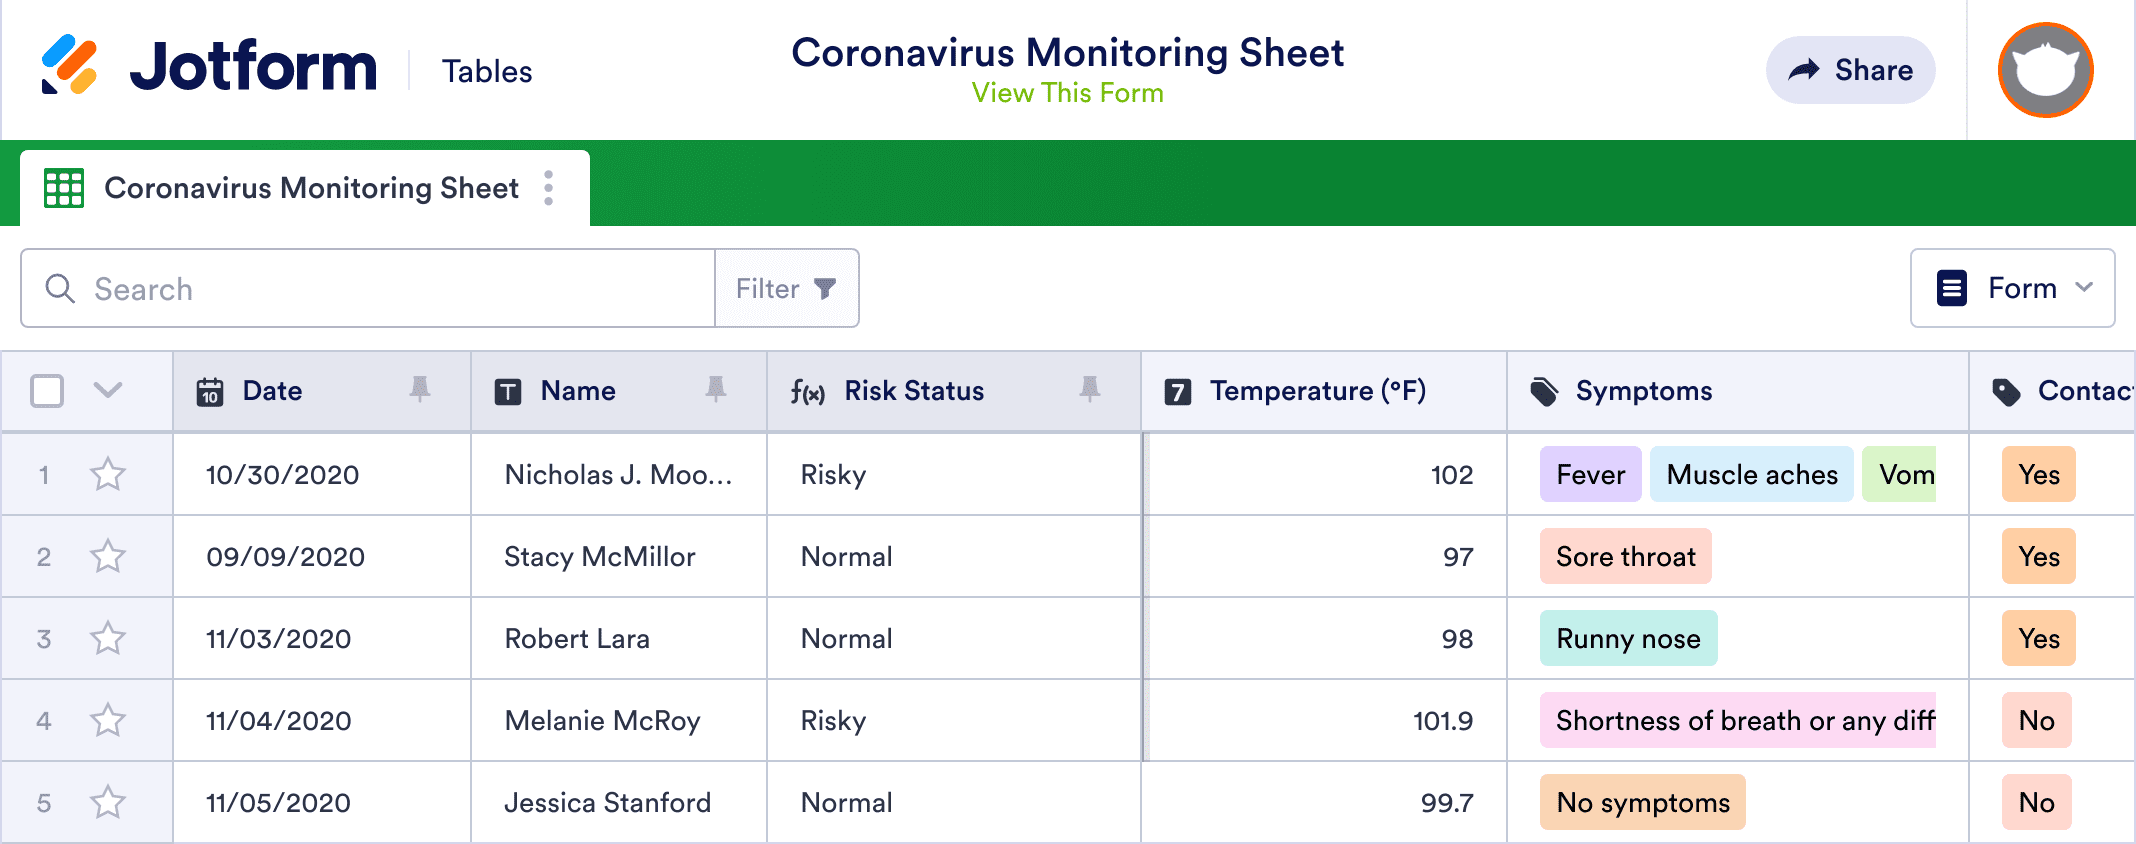 Coronavirus Monitoring Sheet